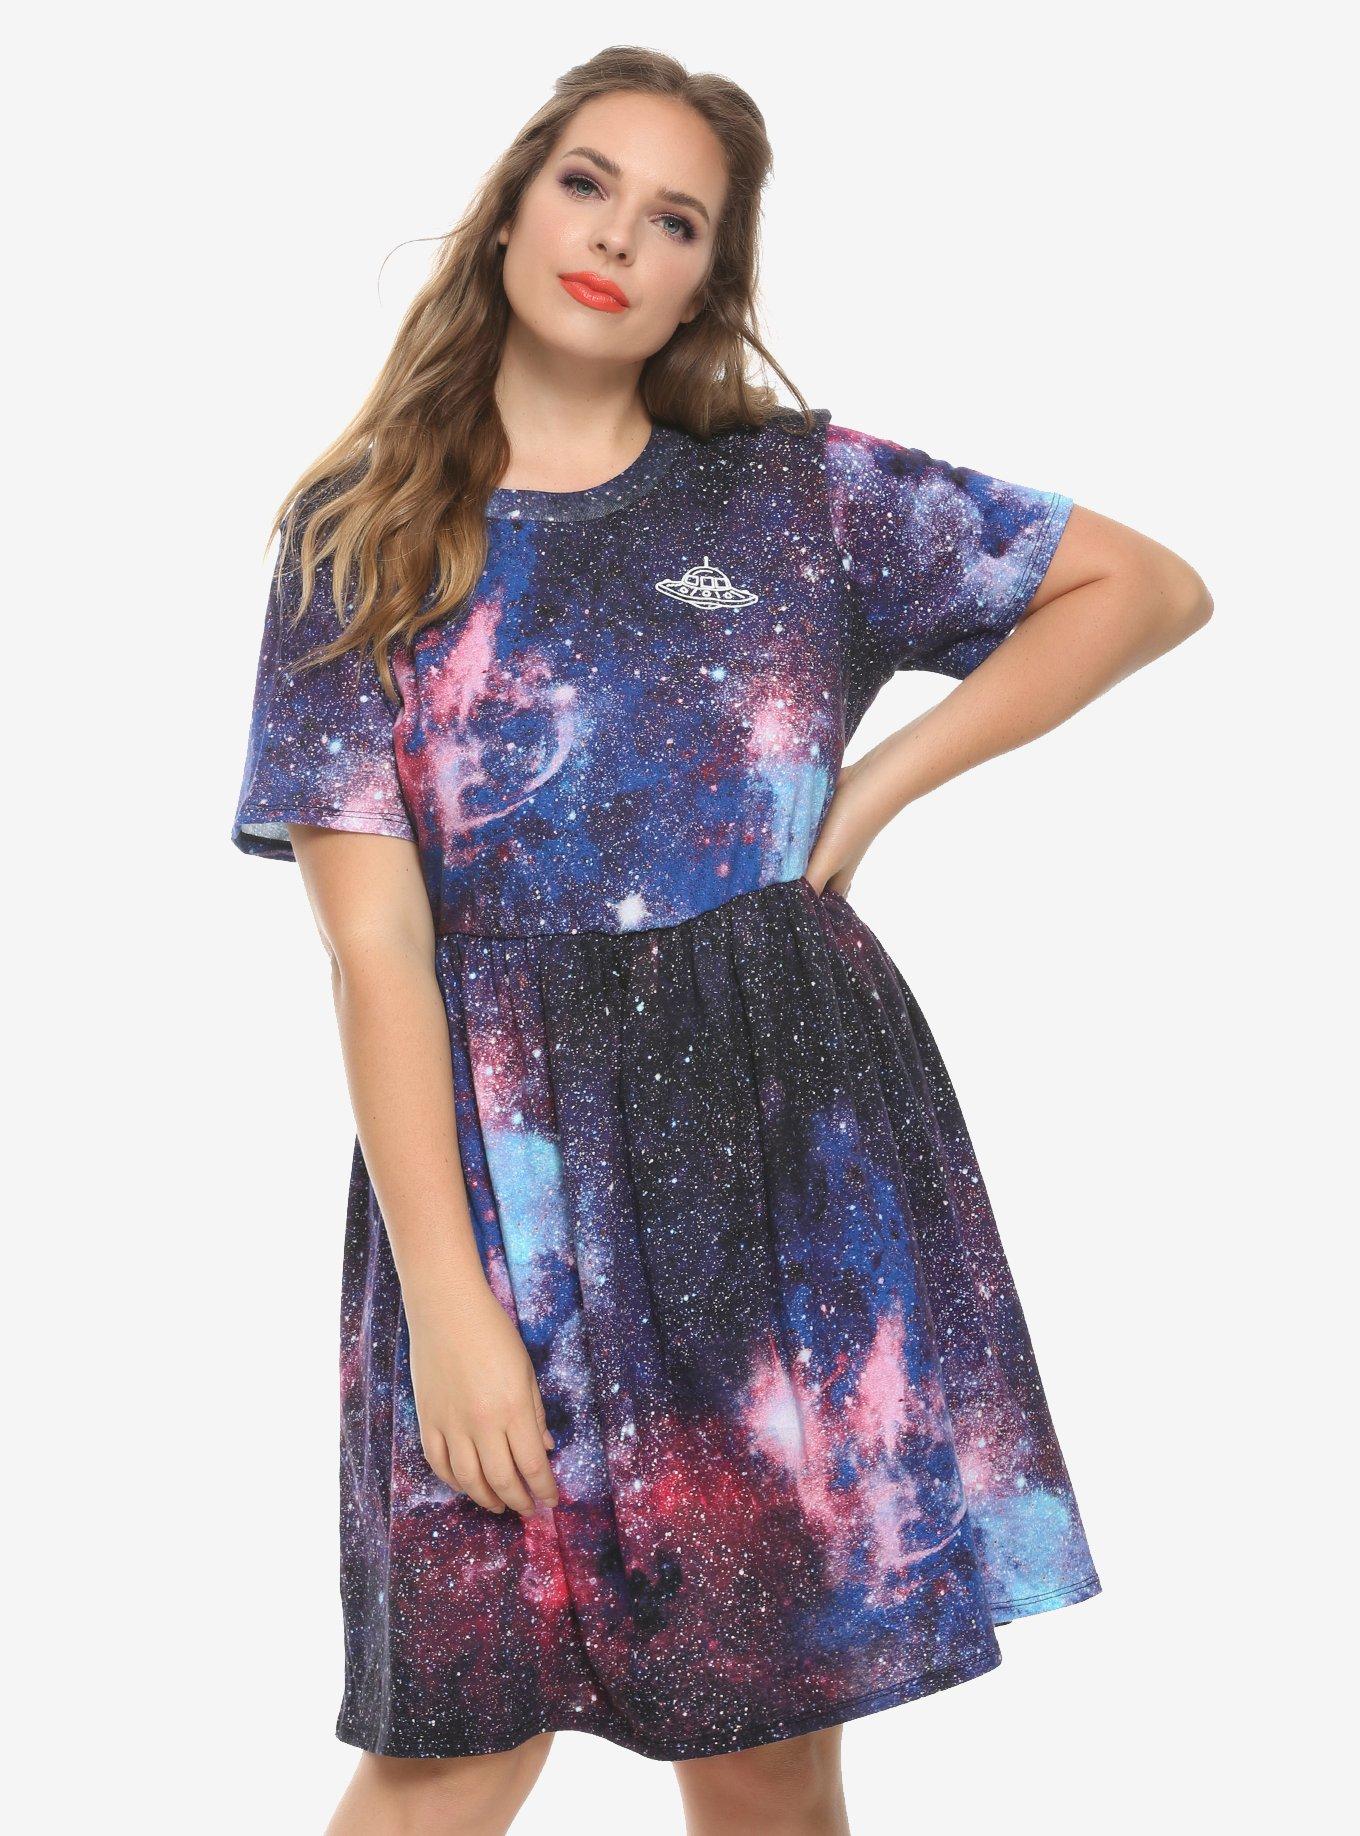 Fremragende Egen slim Galaxy Get In Loser Dress Plus Size | Hot Topic